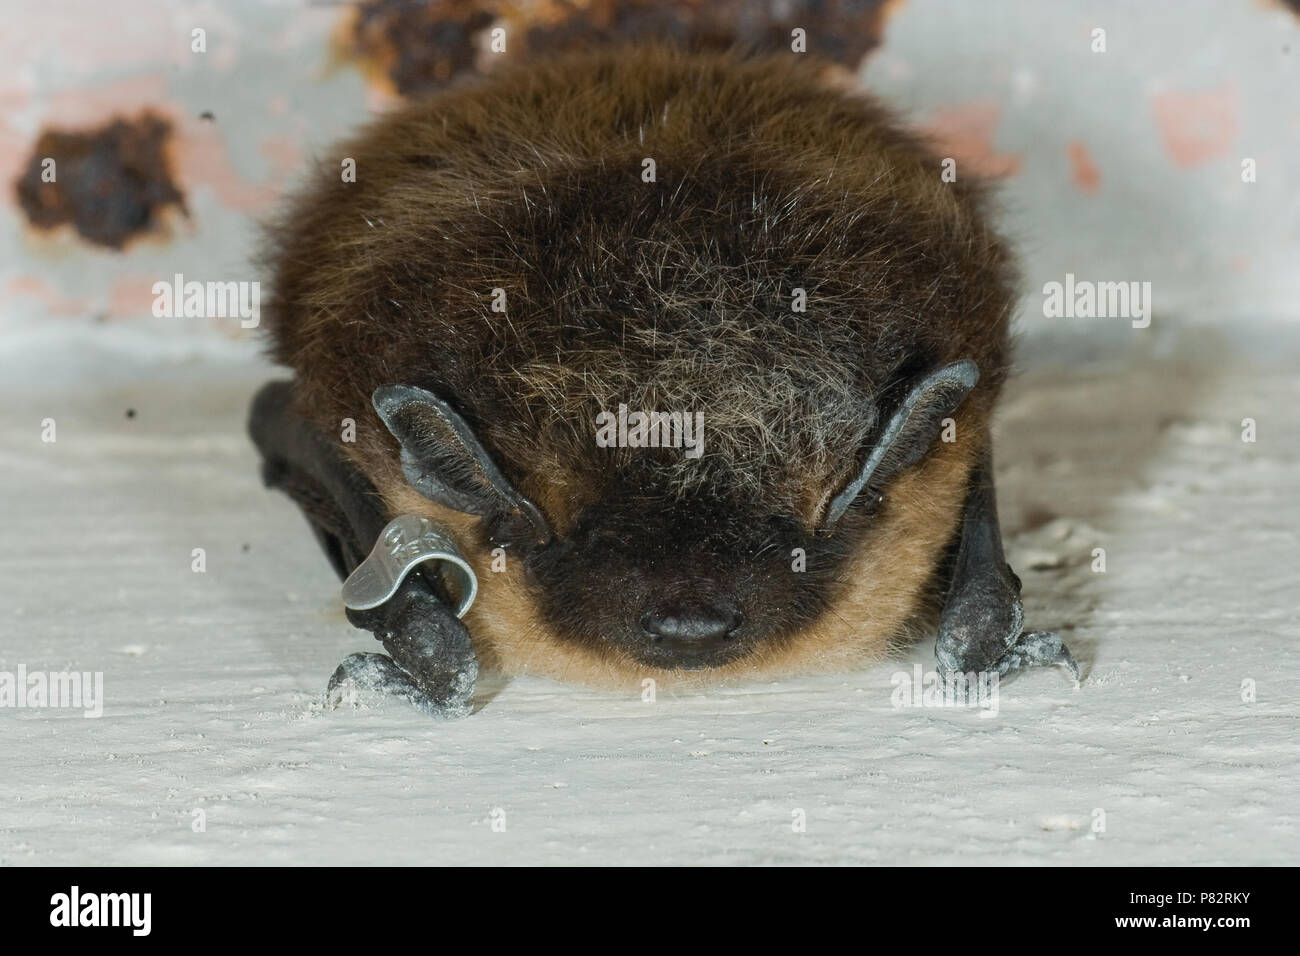 Noordse vleermuis; Northern bat Stock Photo